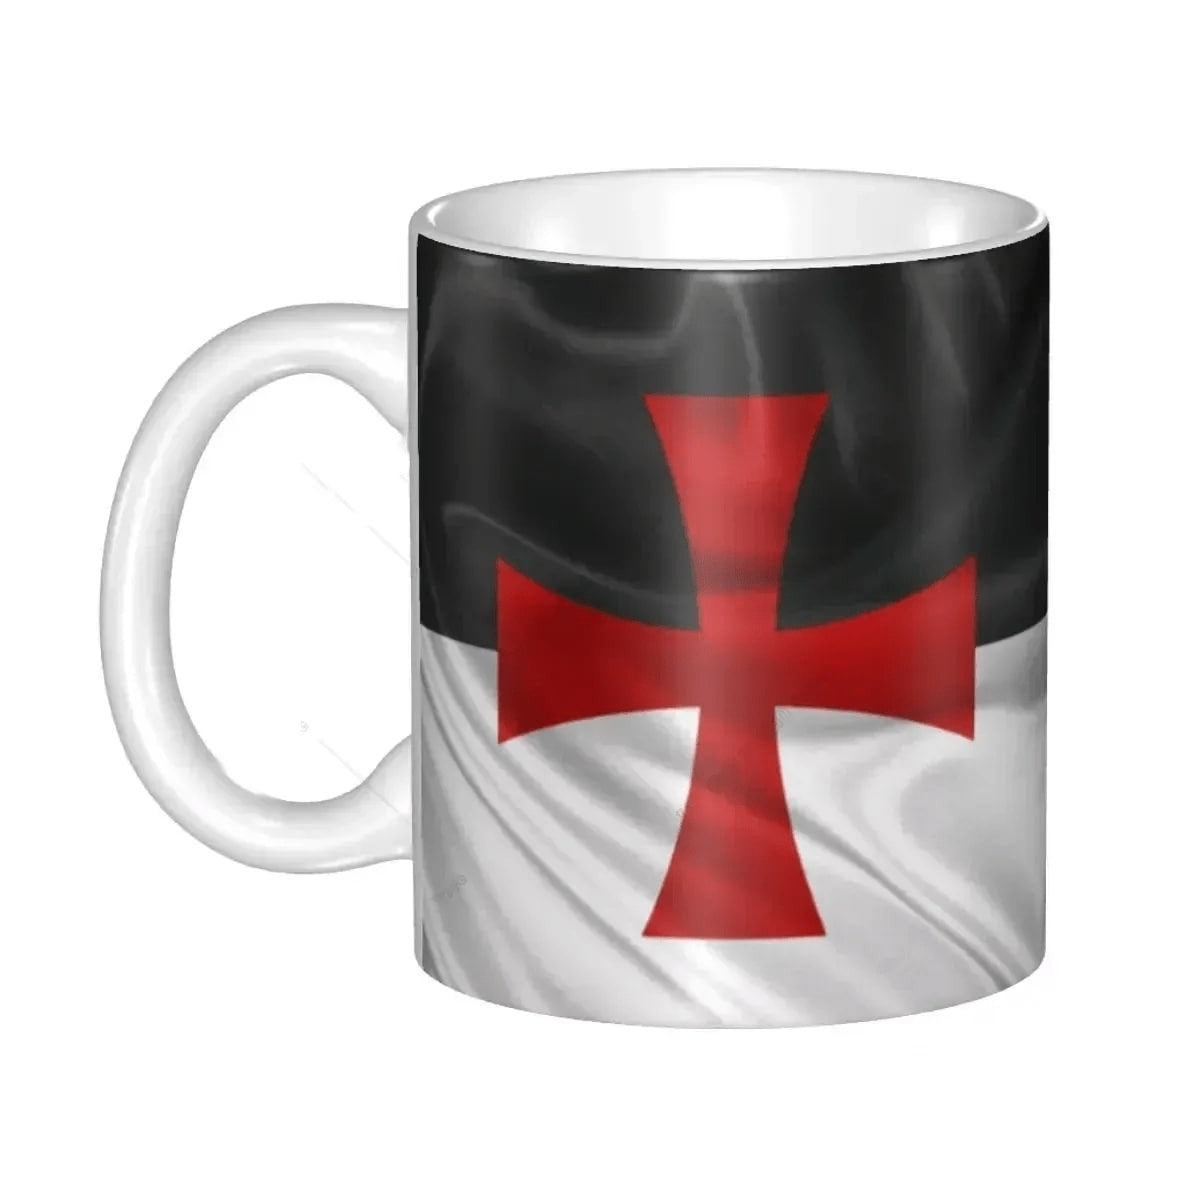 Knights Templar Commandery Mug - Porcelain Red Templar Cross - Bricks Masons